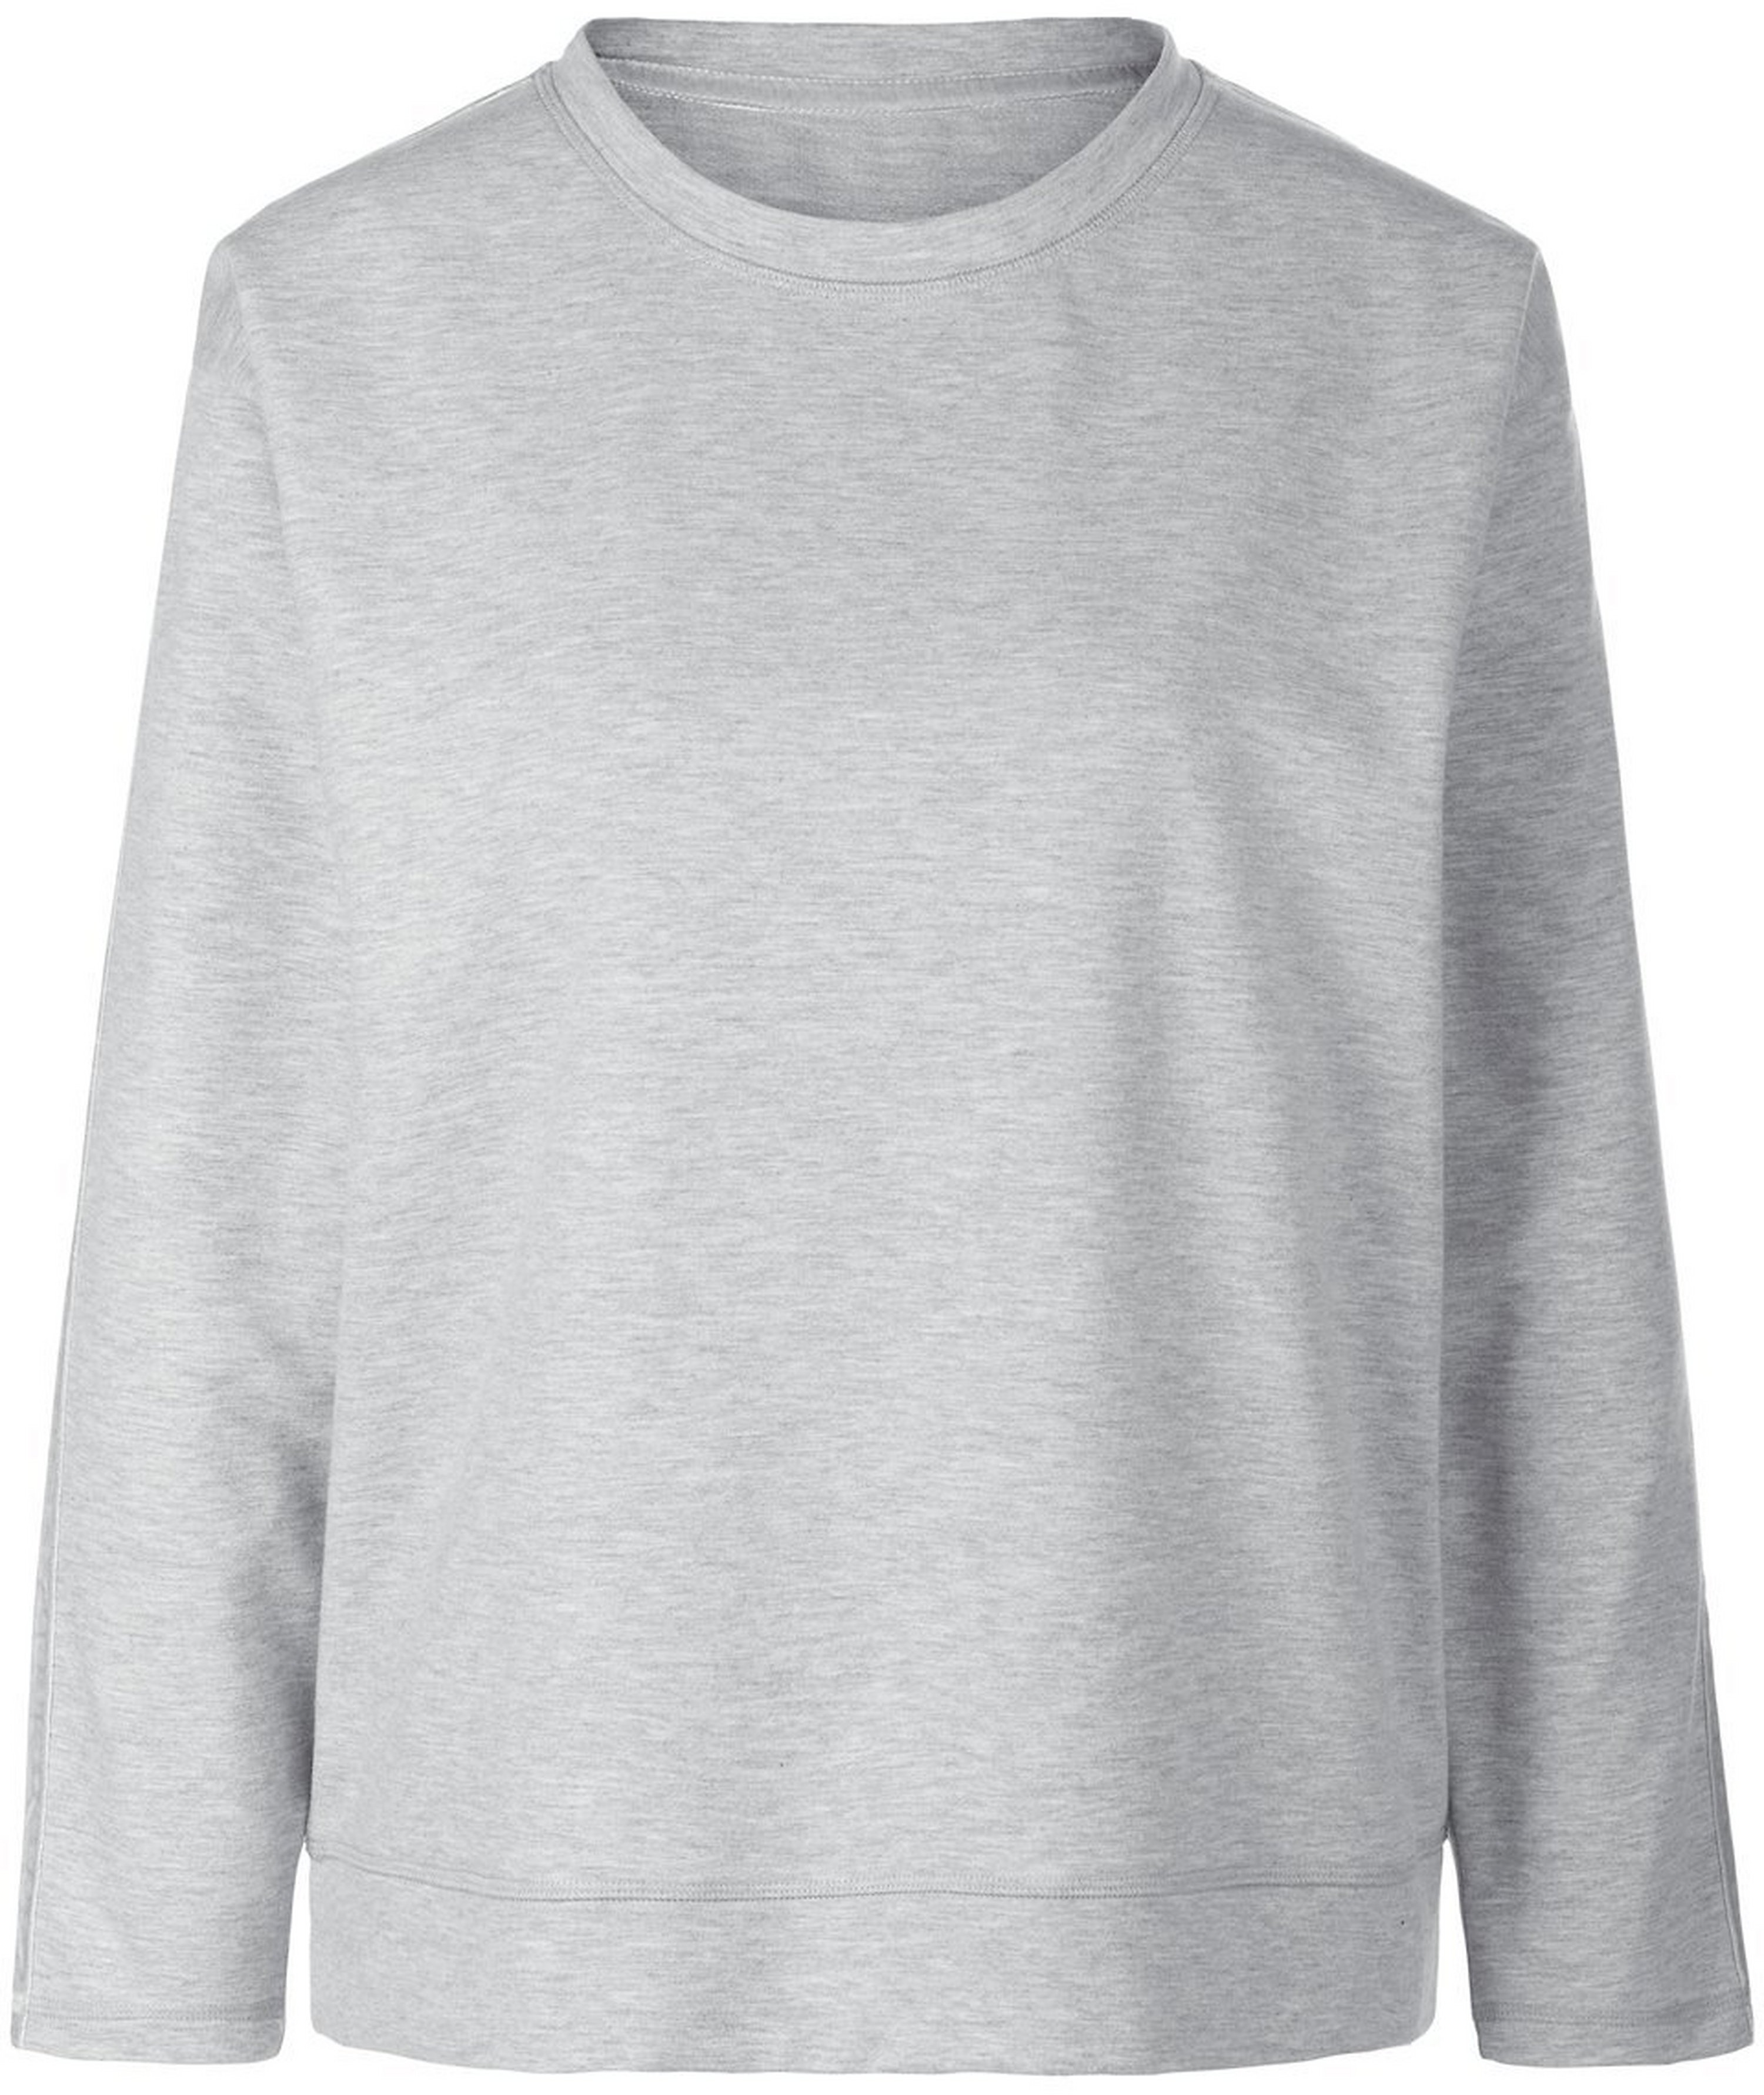 Le sweatshirt manches longues  MYBC gris